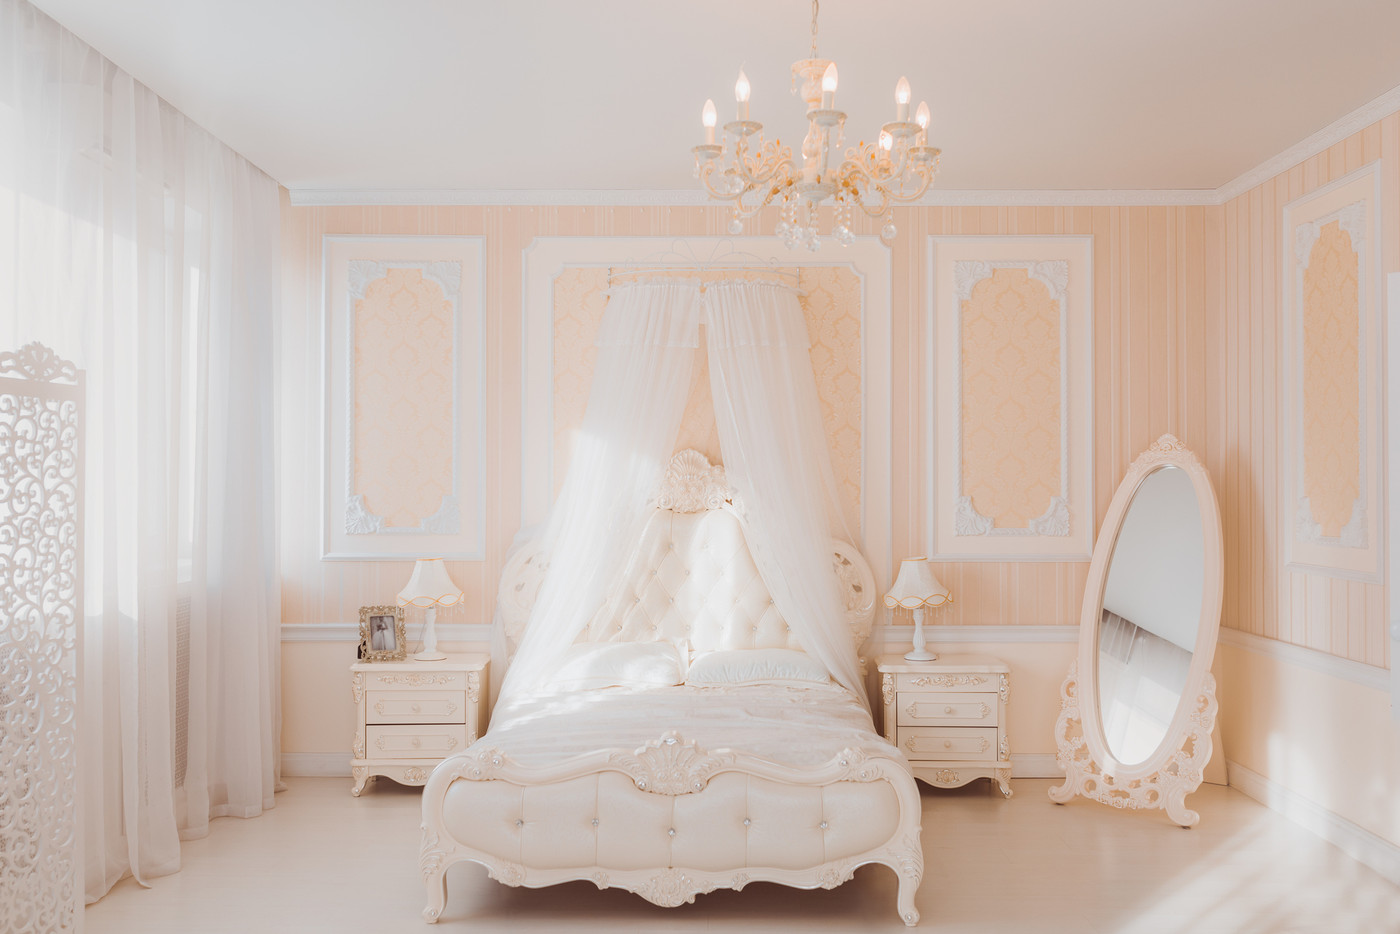 White interior of luxury bedroom